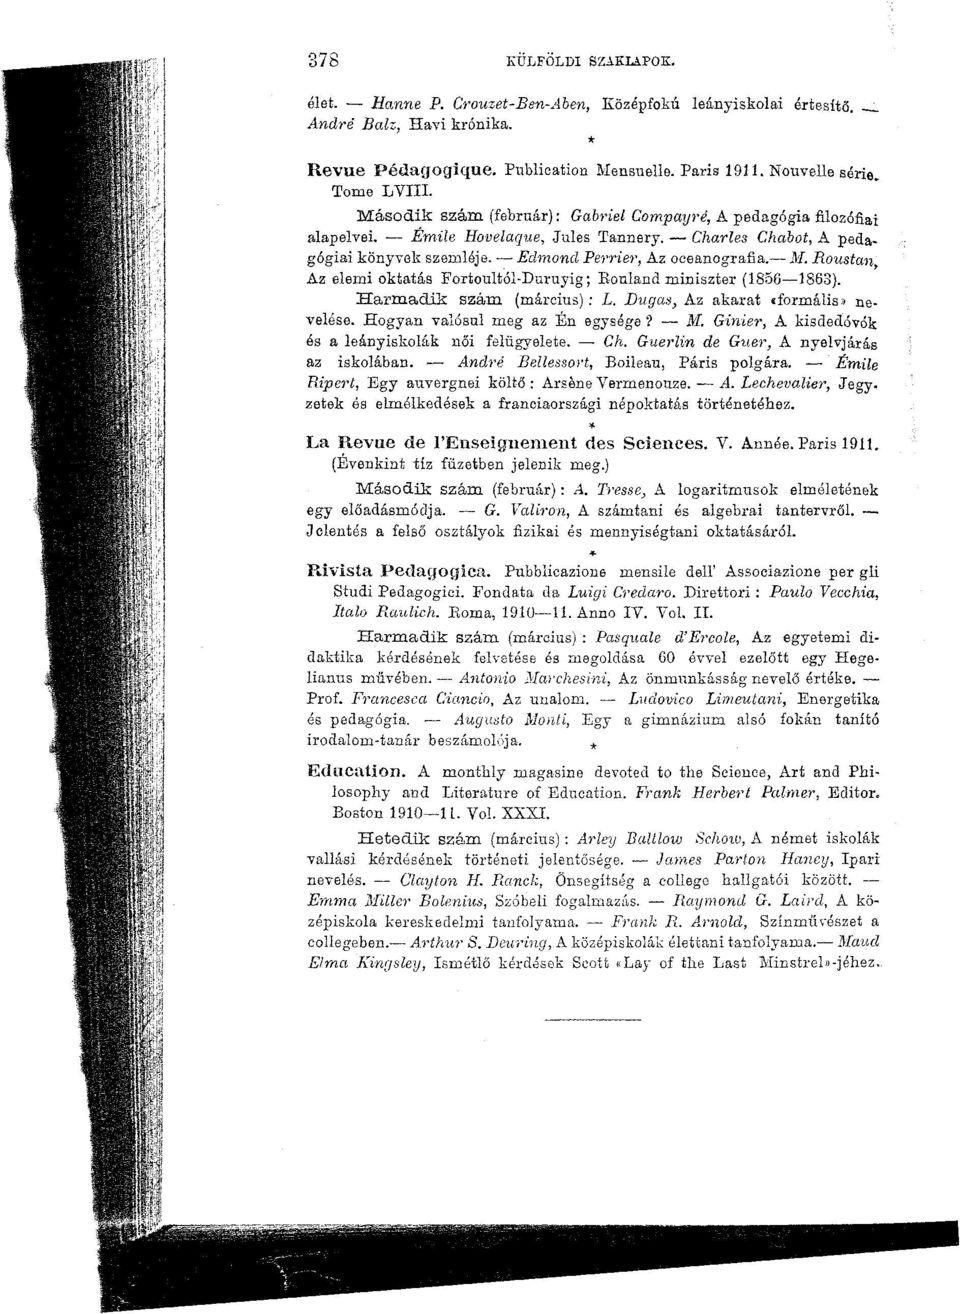 Roustan Az elemi oktatás Fortoultól-Duruyig; Rouland miniszter (1856 1883). Harmadik szám (március): L. Dugás, Az akarat «formális» nevelése. Hogyan valósul meg az Én egysége? M.